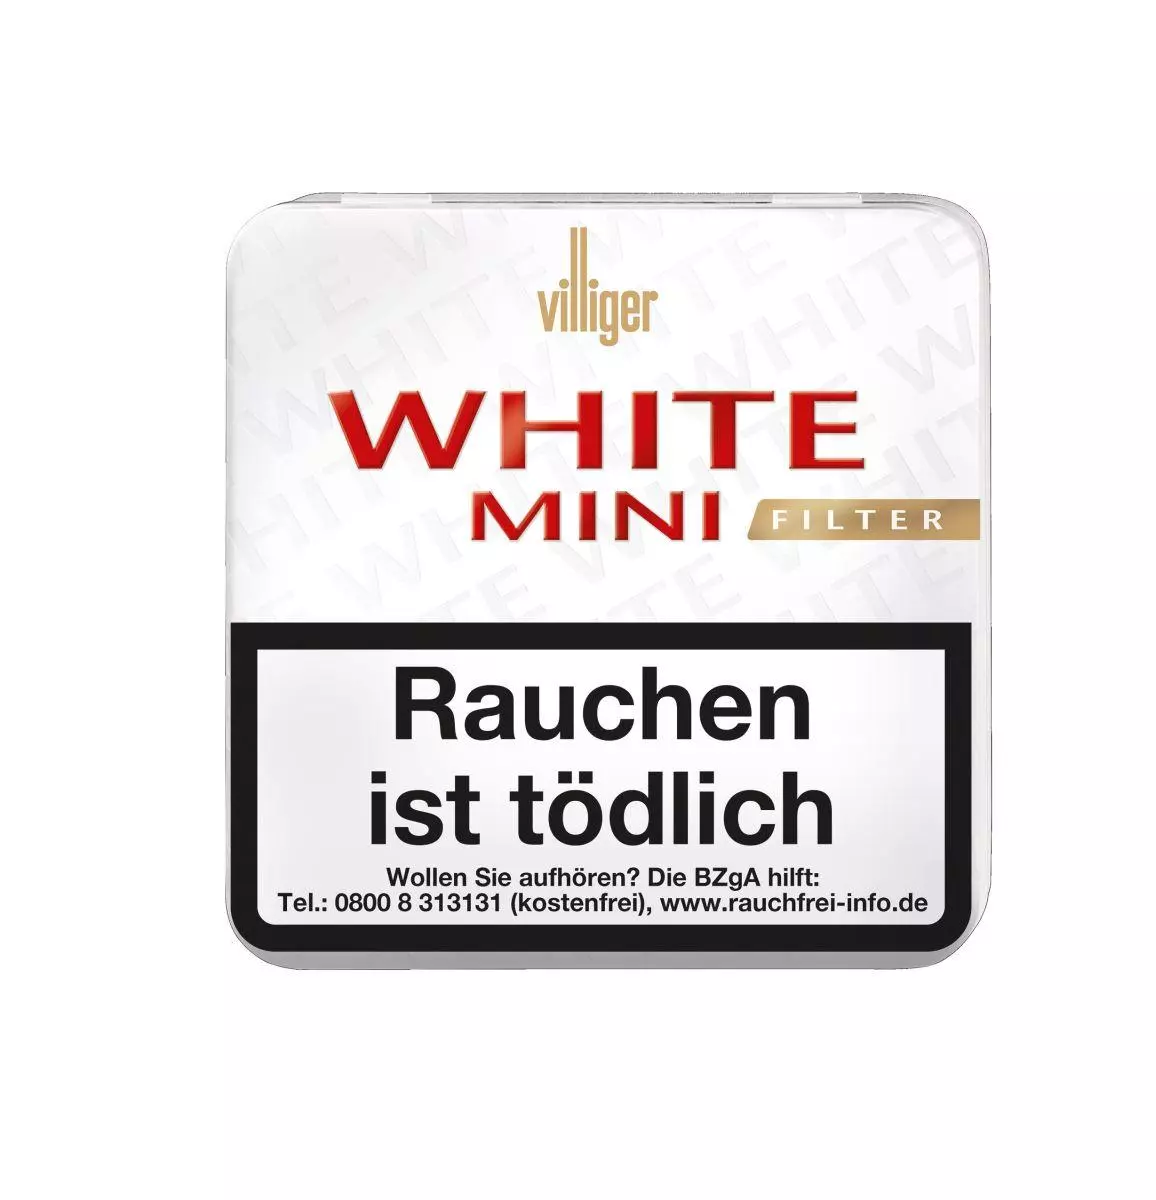 Villiger White Mini Filter Sumatra